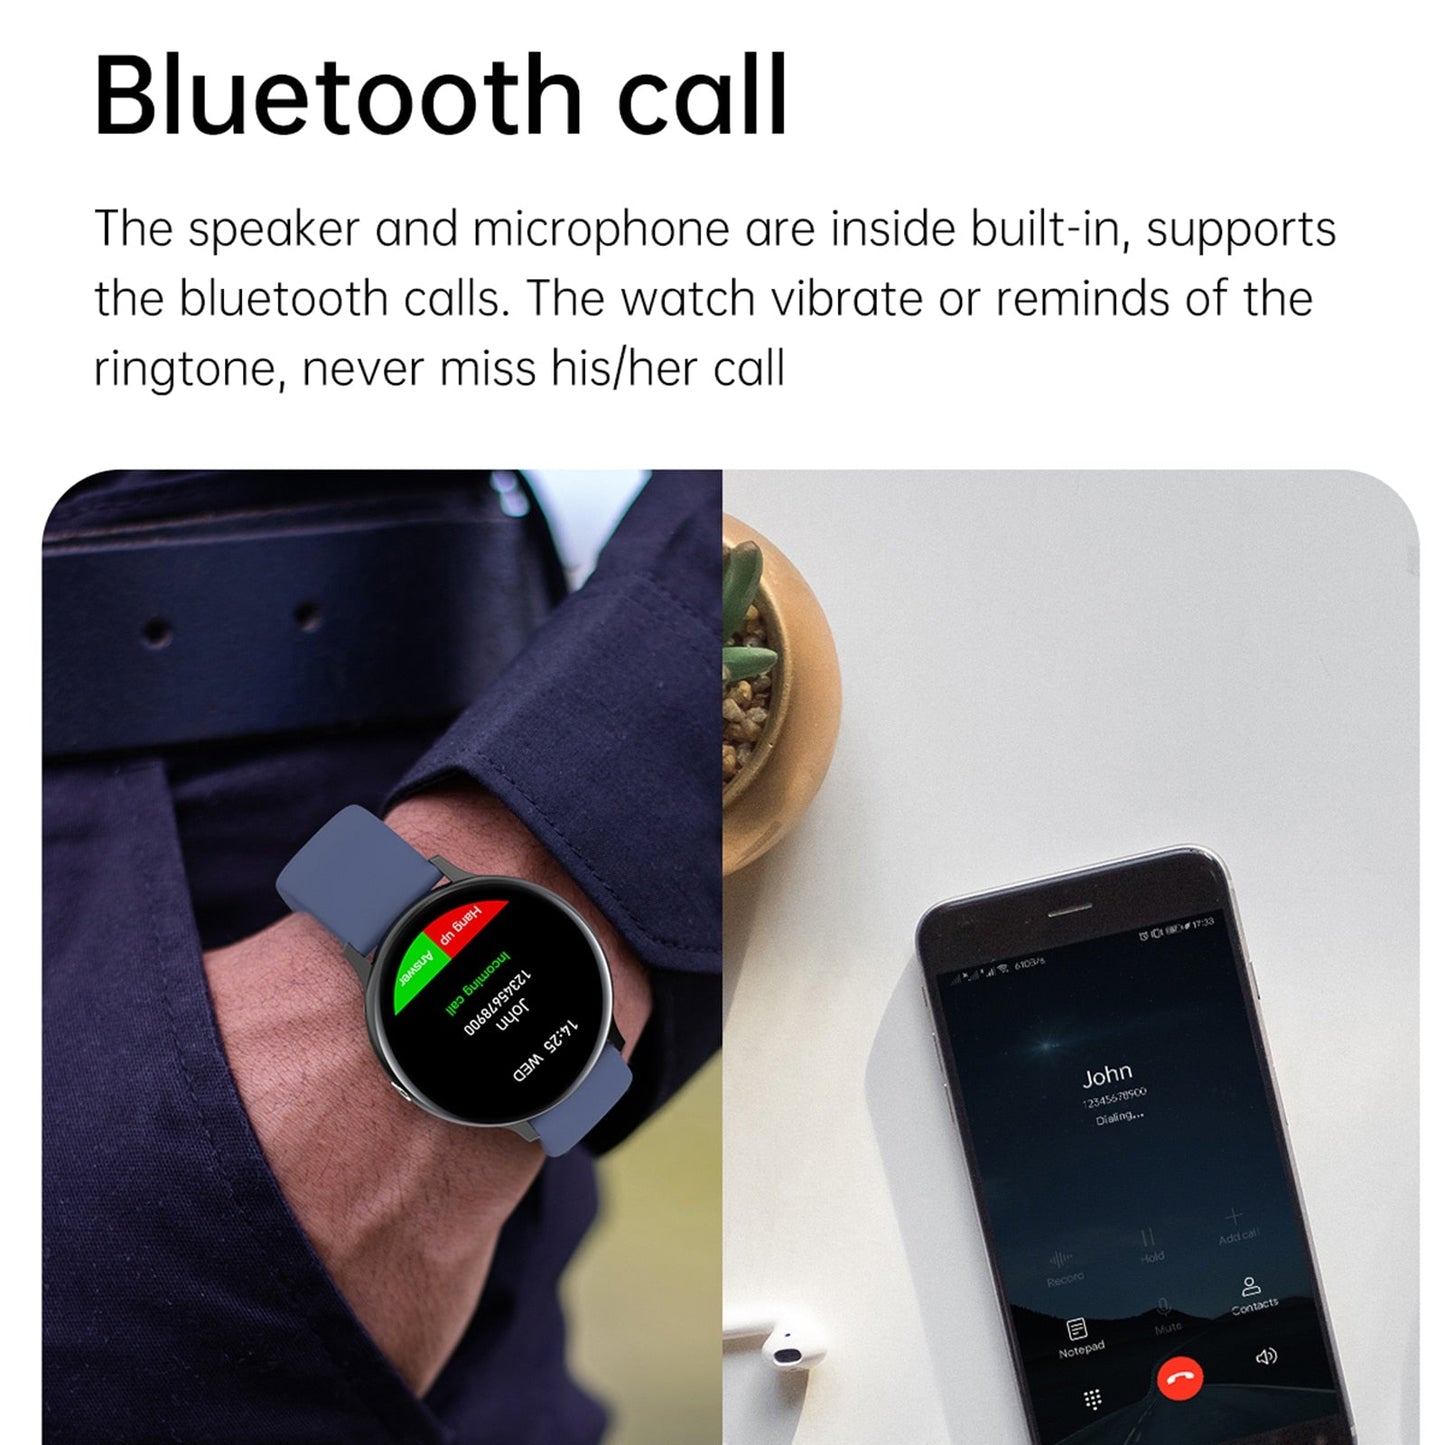 Smartwatch 4G ROM Waterproof